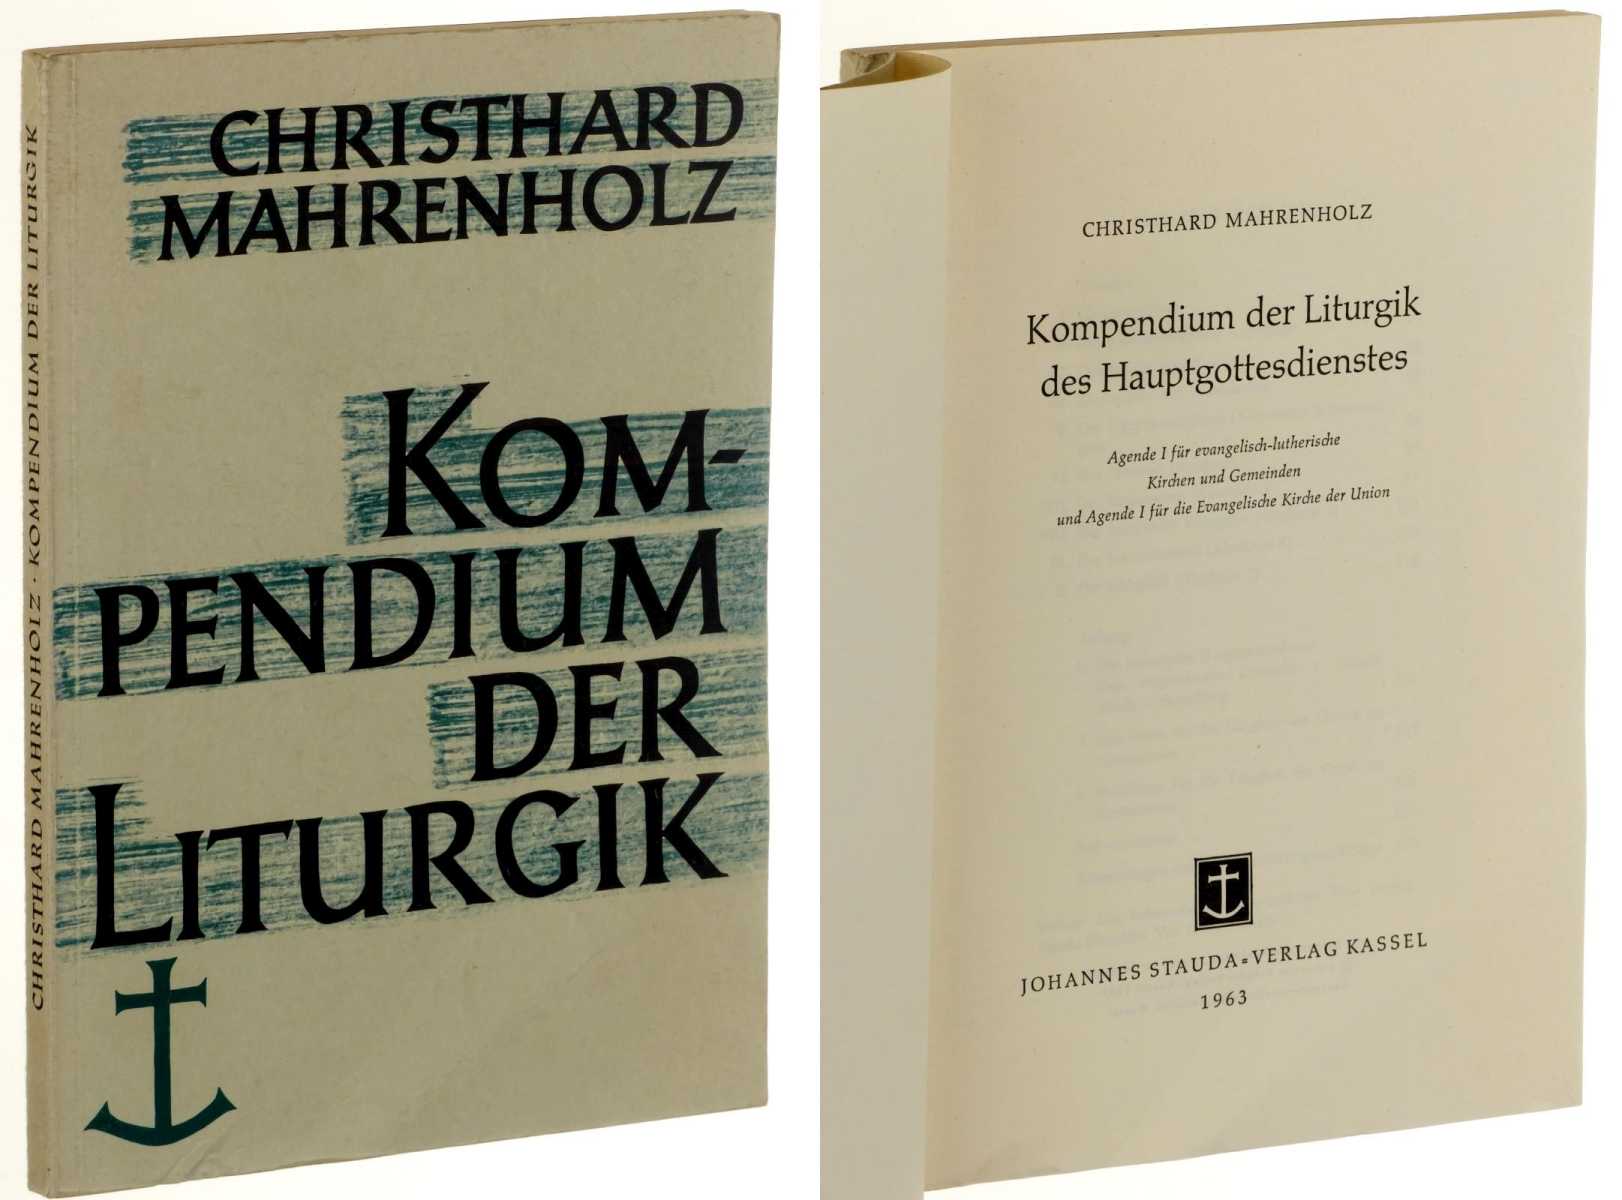 Mahrenholz, Christard:  Kompendium der Liturgik. Agende I für die evangelisch-lutherische Kirchen und Gemeinden und Agende I für die Evangelische Kirche der Union. 